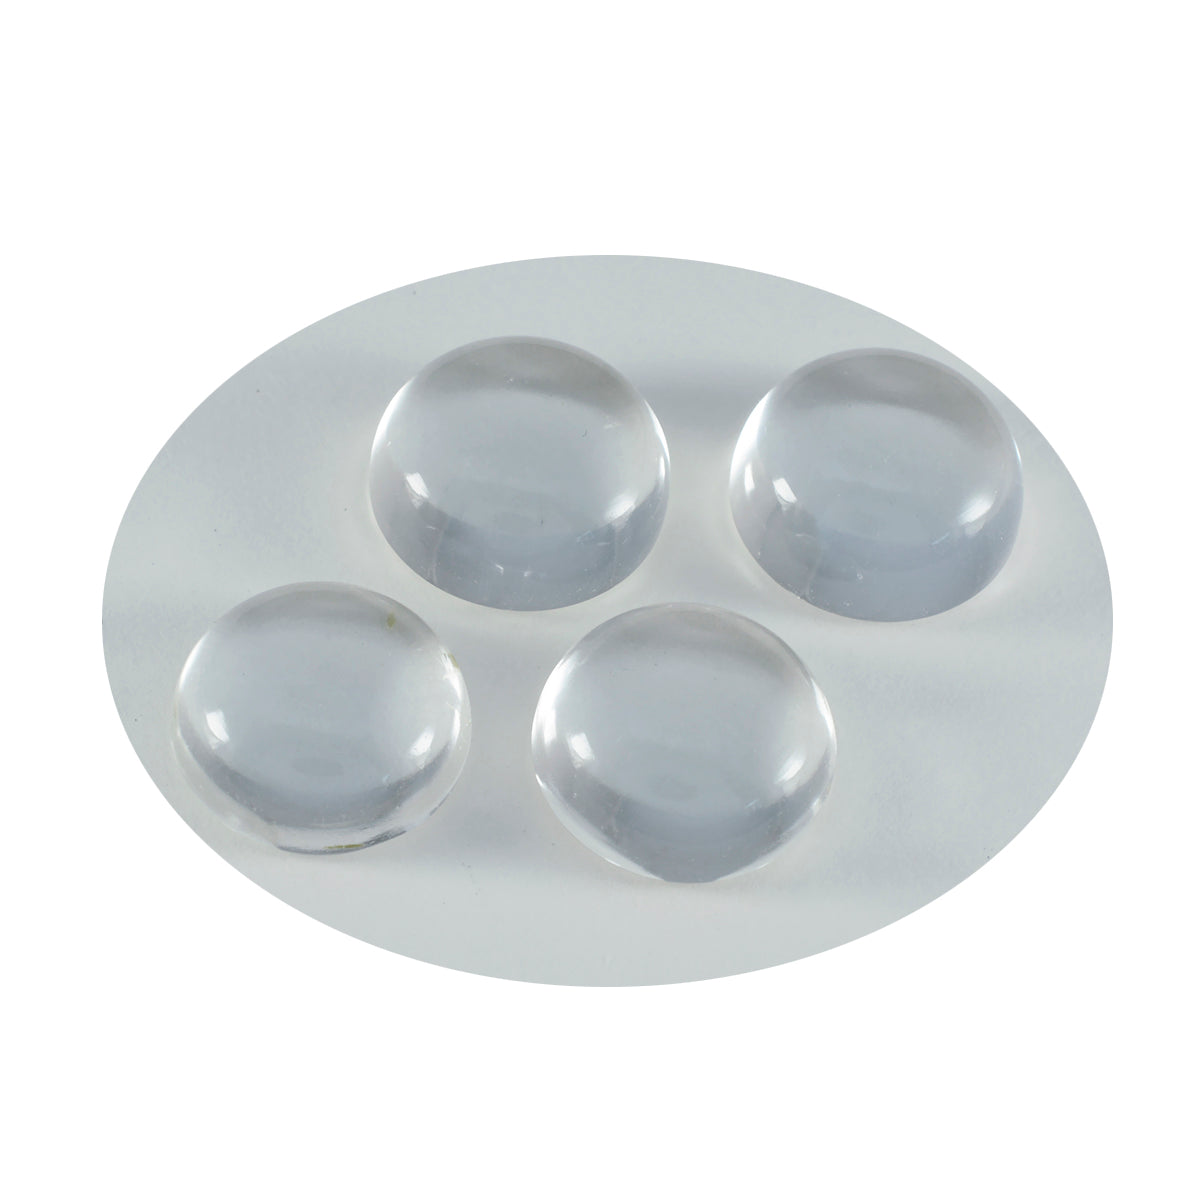 Riyogems – cabochon de quartz en cristal blanc, forme ronde, belle qualité, pierre précieuse en vrac, 14x14mm, 1 pièce